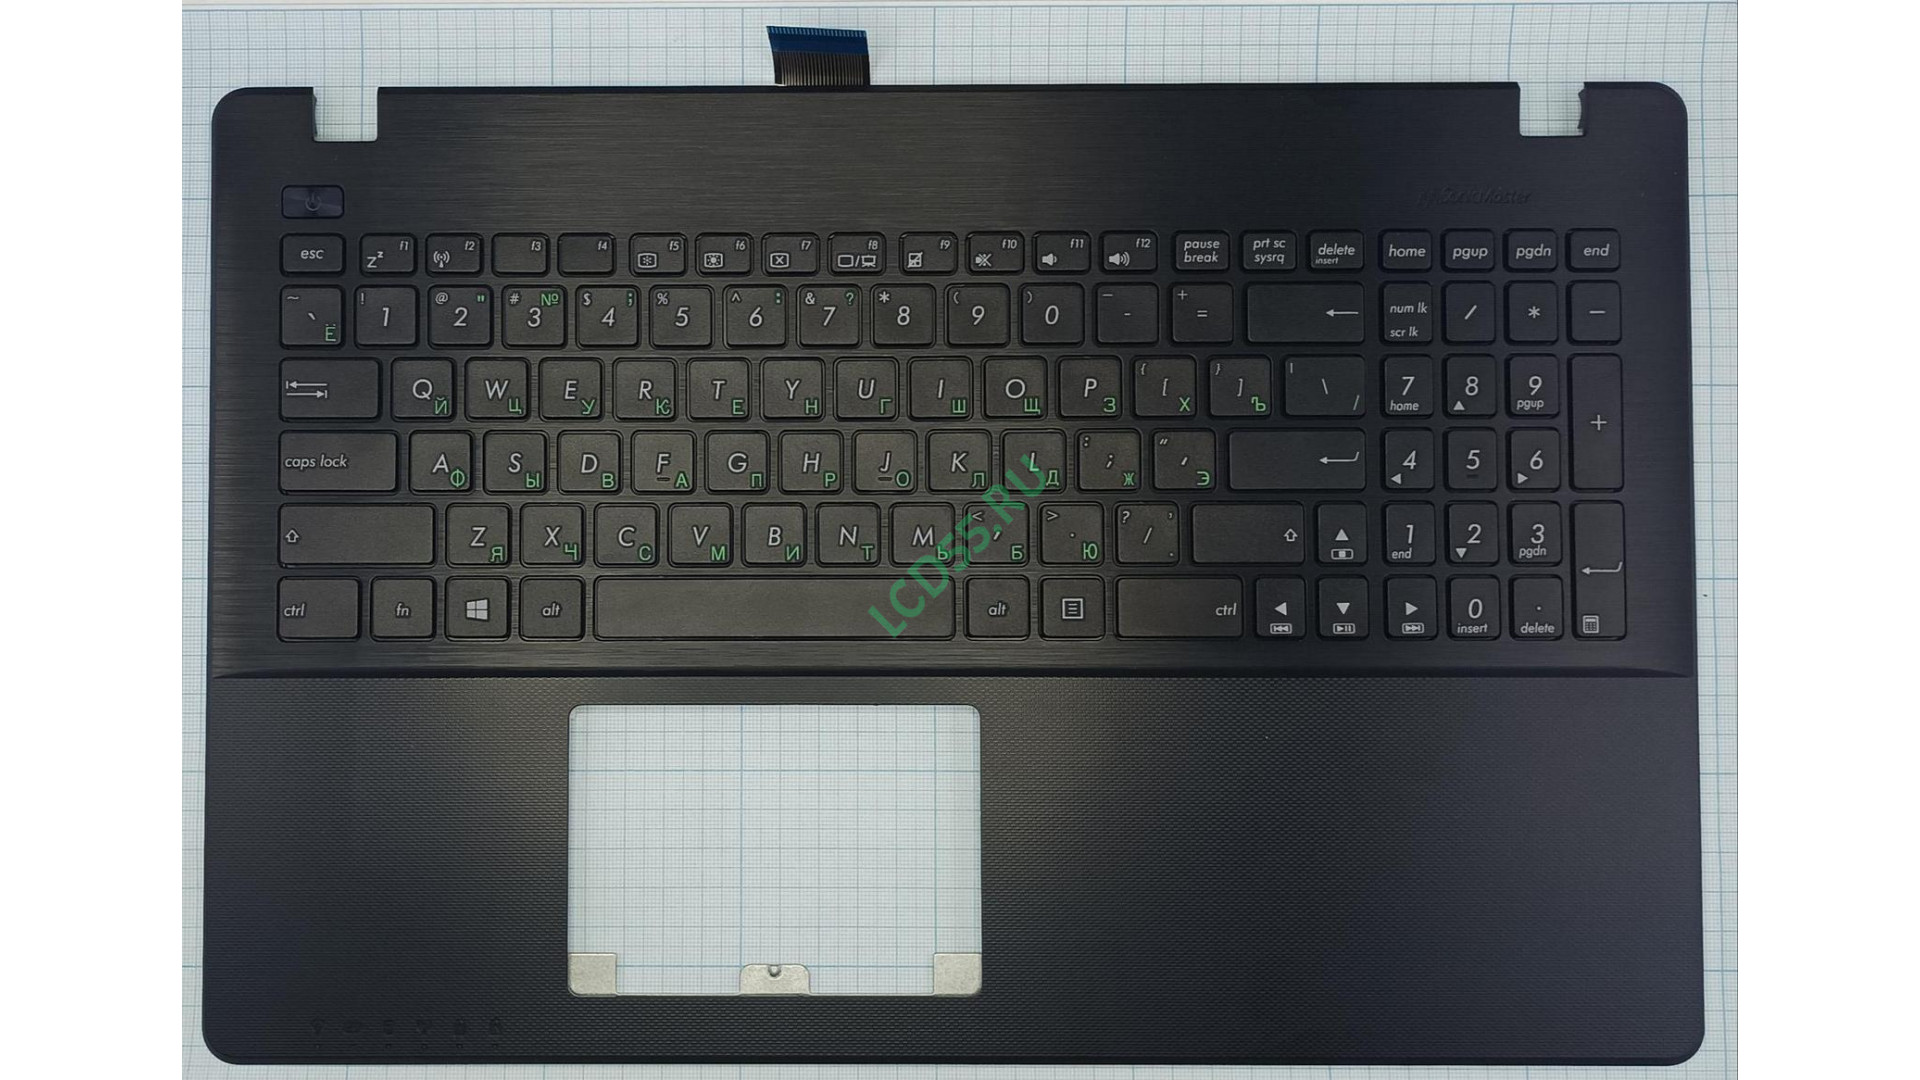 Клавиатура в сборе с TOP панелью Asus X550 13NB03VBAP0301 черная